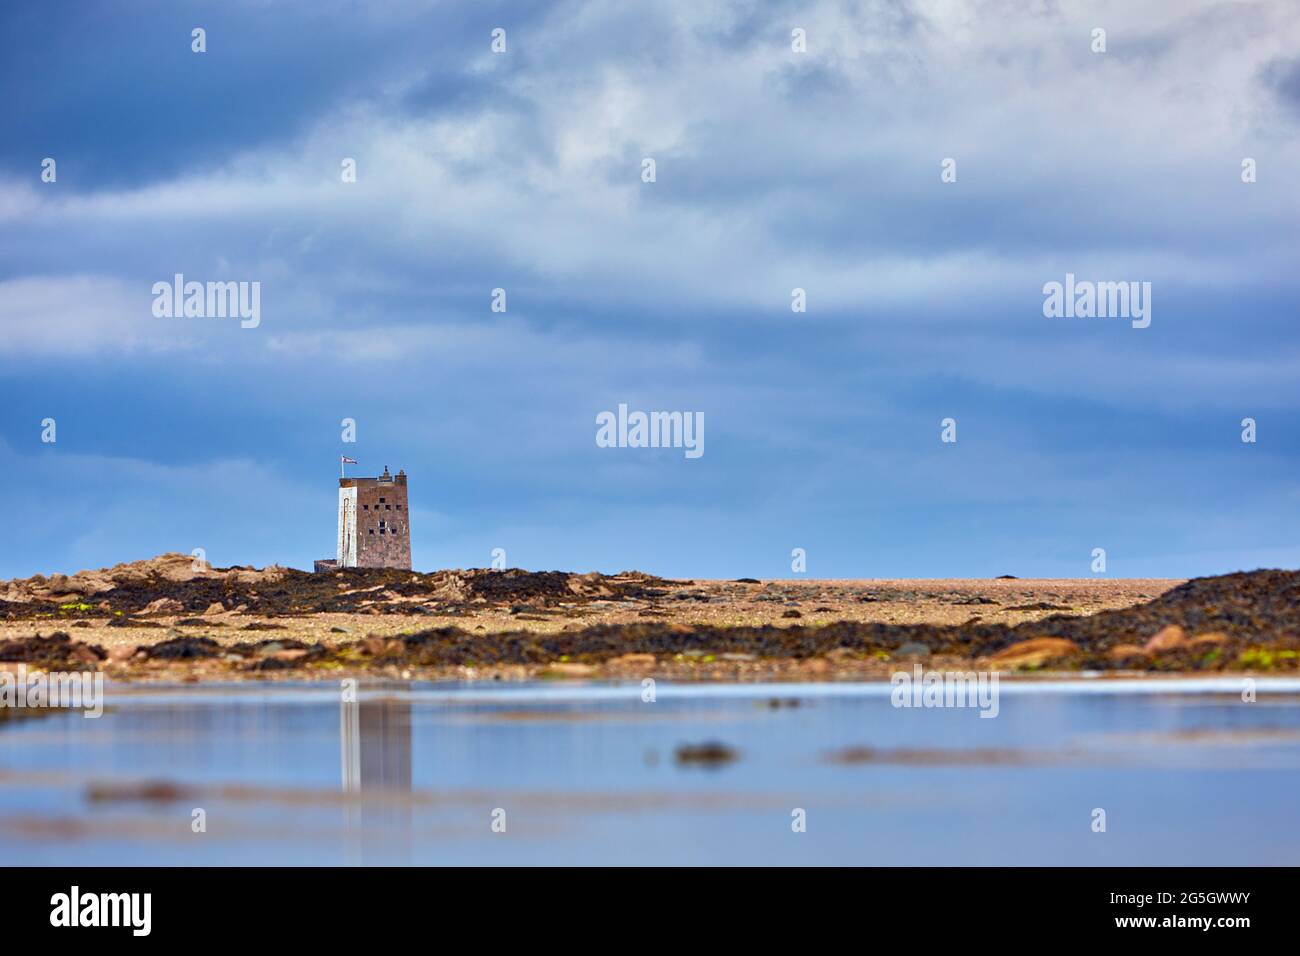 Image de la tour Seymour avec ciel nuageux et réflexion dans la piscine avec des ondulations. Jersey, îles Anglo-Normandes. Mise au point sélective Banque D'Images